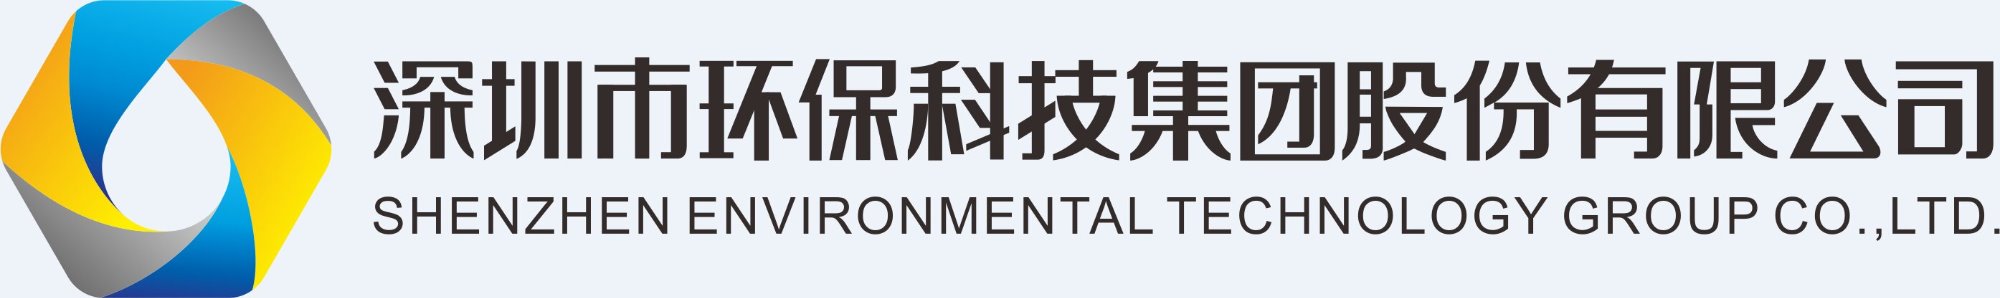 深圳市环保科技集团股份有限公司